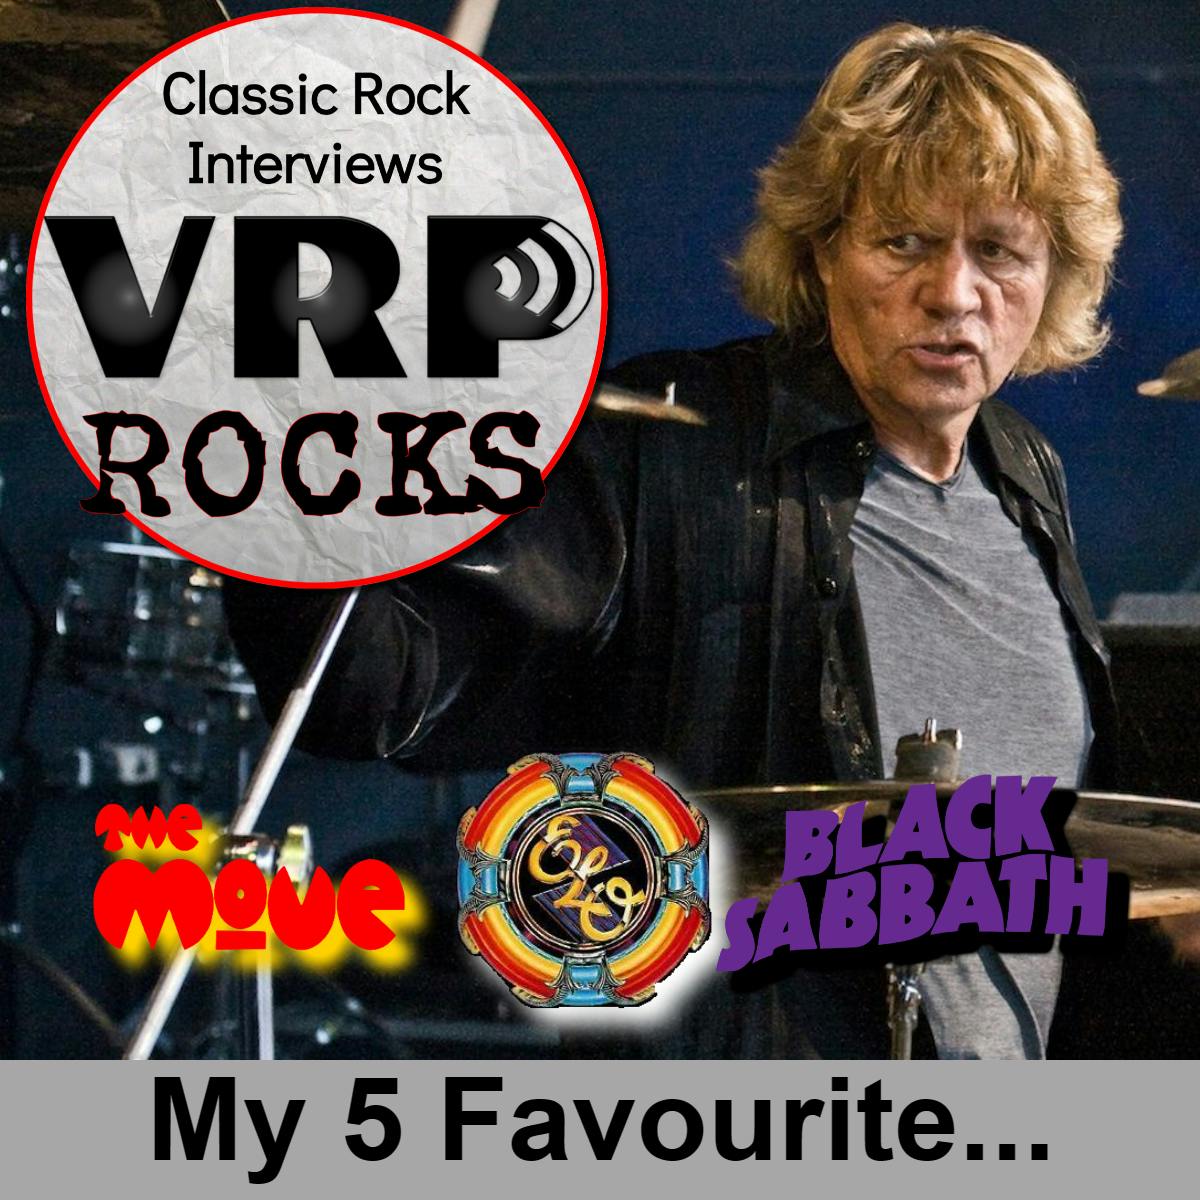 Bev Bevan - ELO & Black Sabbath: My 5 Favourite...